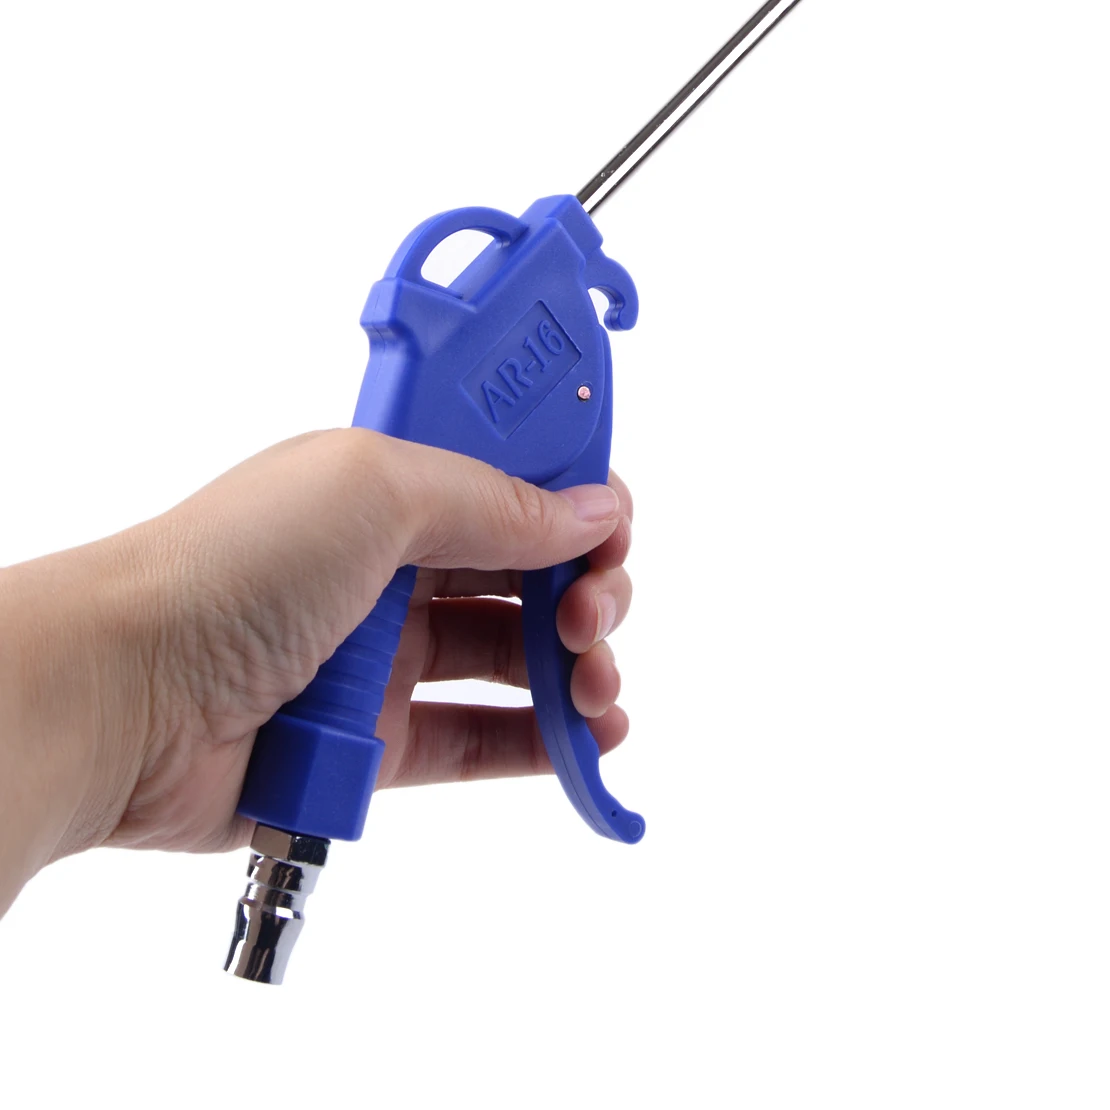 DWCX 2 мм синяя ручка офсетный наконечник угловая насадка Пыльник очиститель воздуха дуга Пистолет Сцепление пыль воздуходувка инструмент